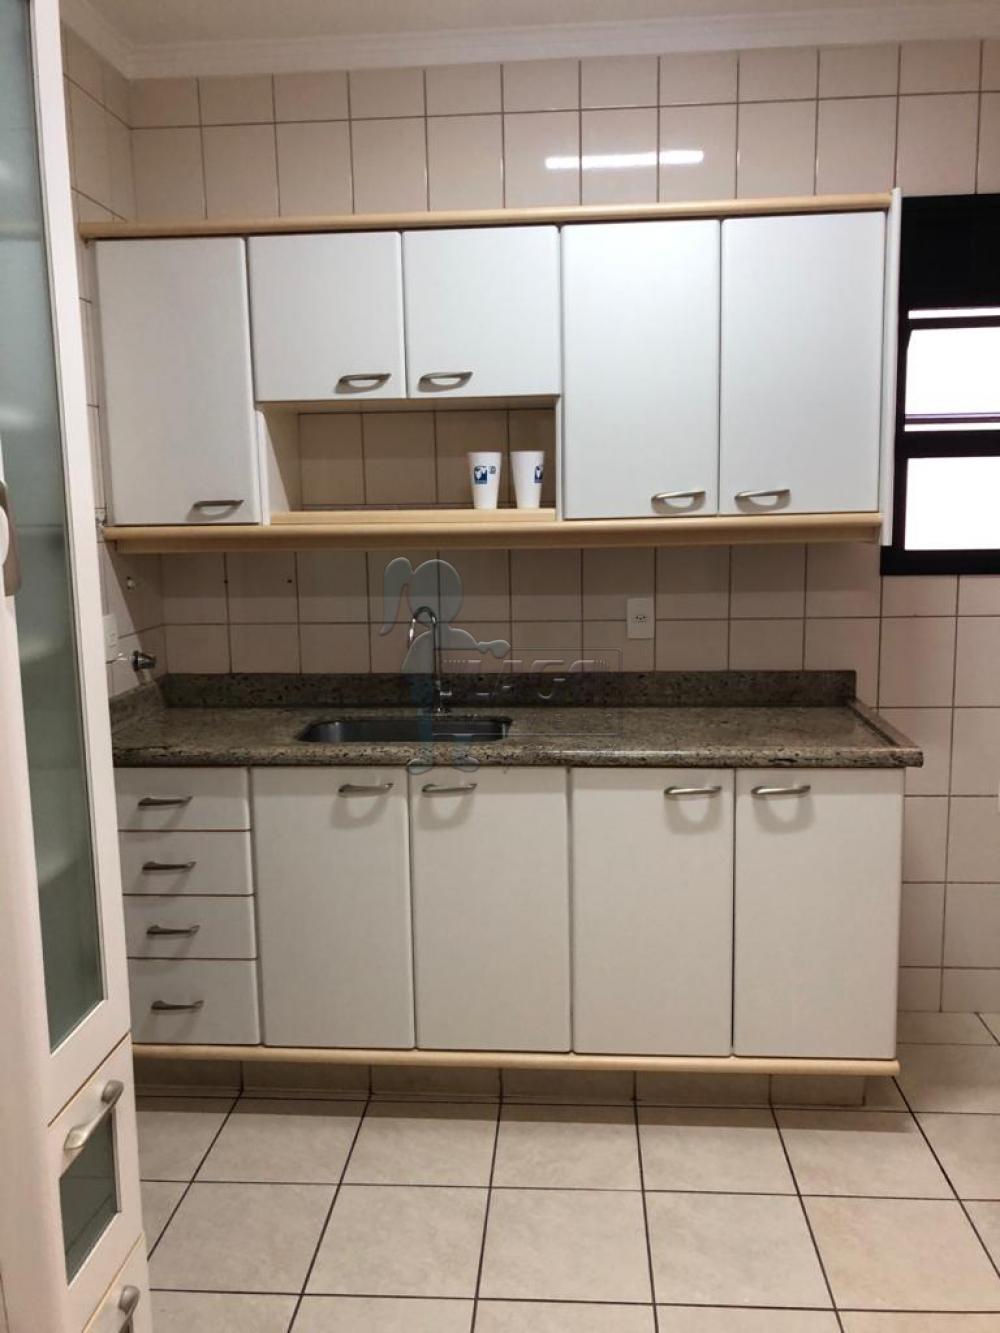 Alugar Apartamentos / Padrão em Ribeirão Preto R$ 2.800,00 - Foto 12